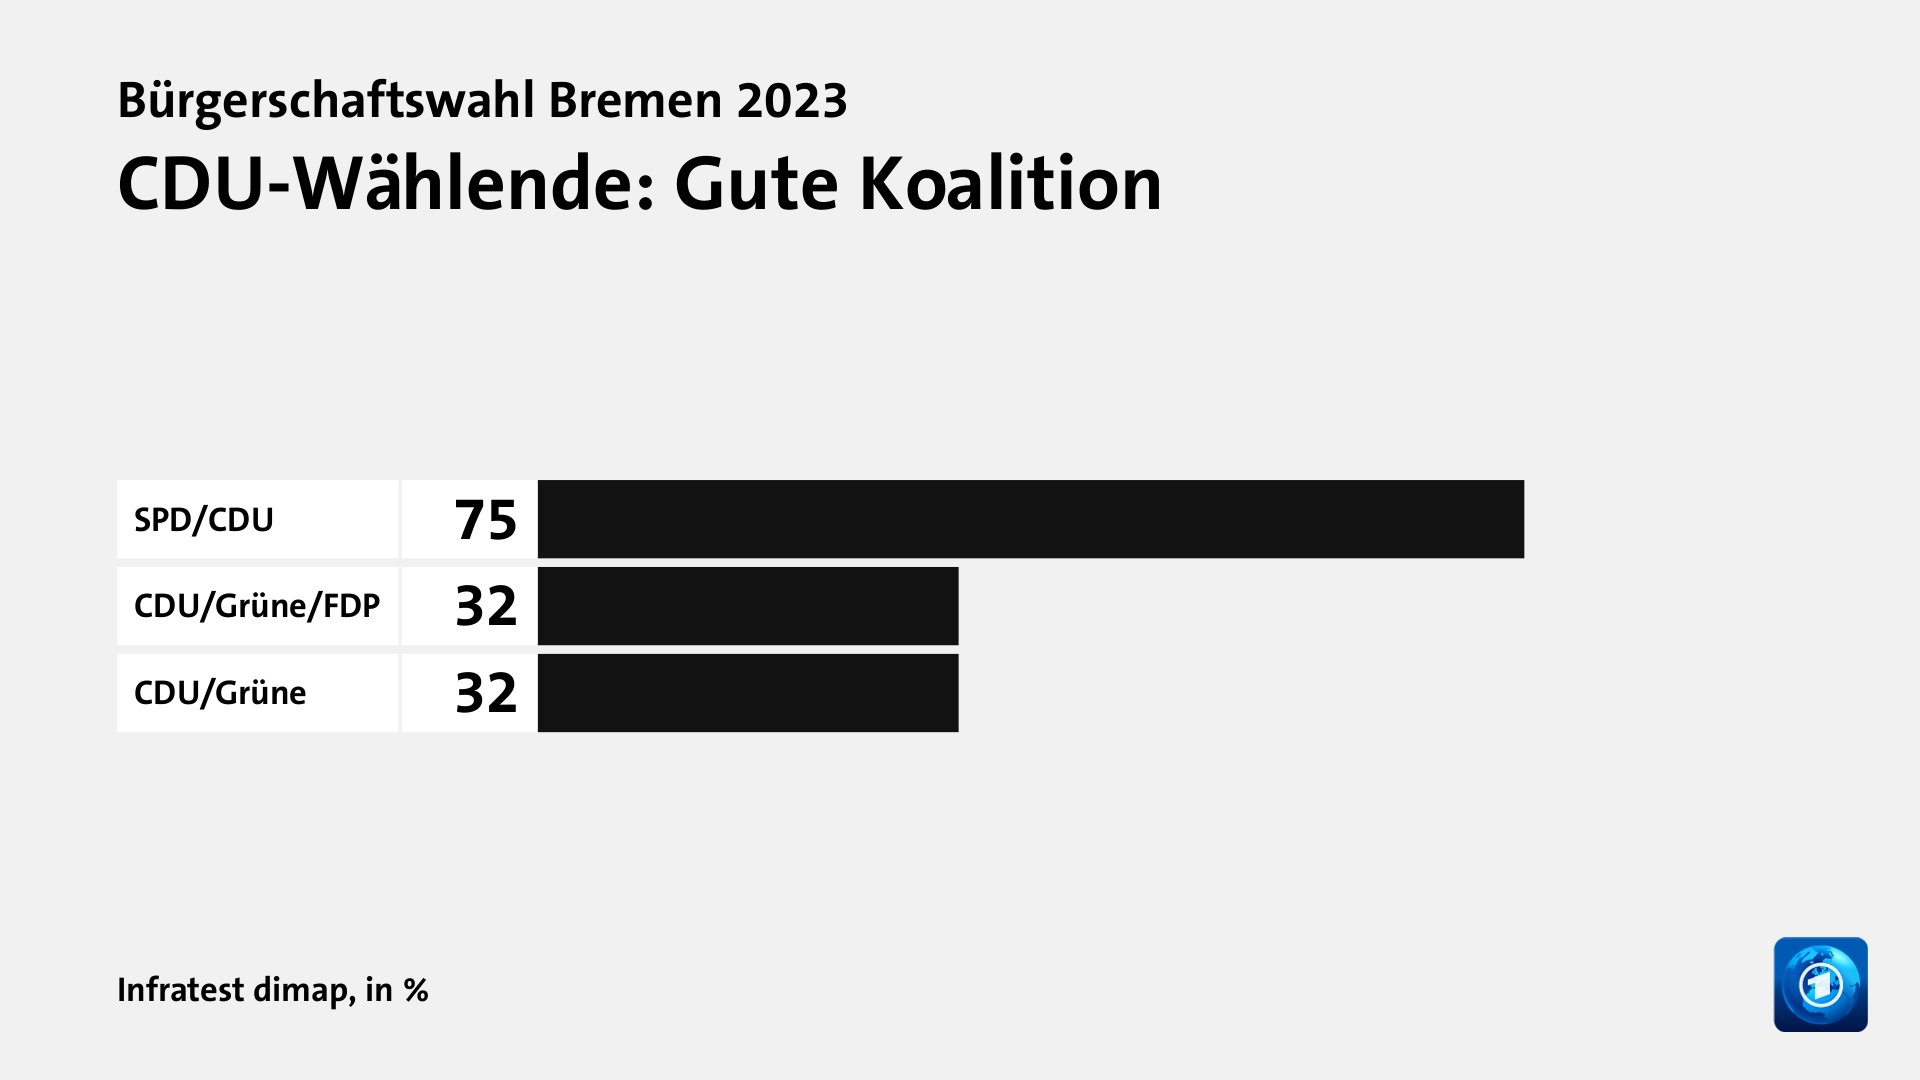 CDU-Wählende: Gute Koalition, in %: SPD/CDU 75, CDU/Grüne/FDP 32, CDU/Grüne 32, Quelle: Infratest dimap